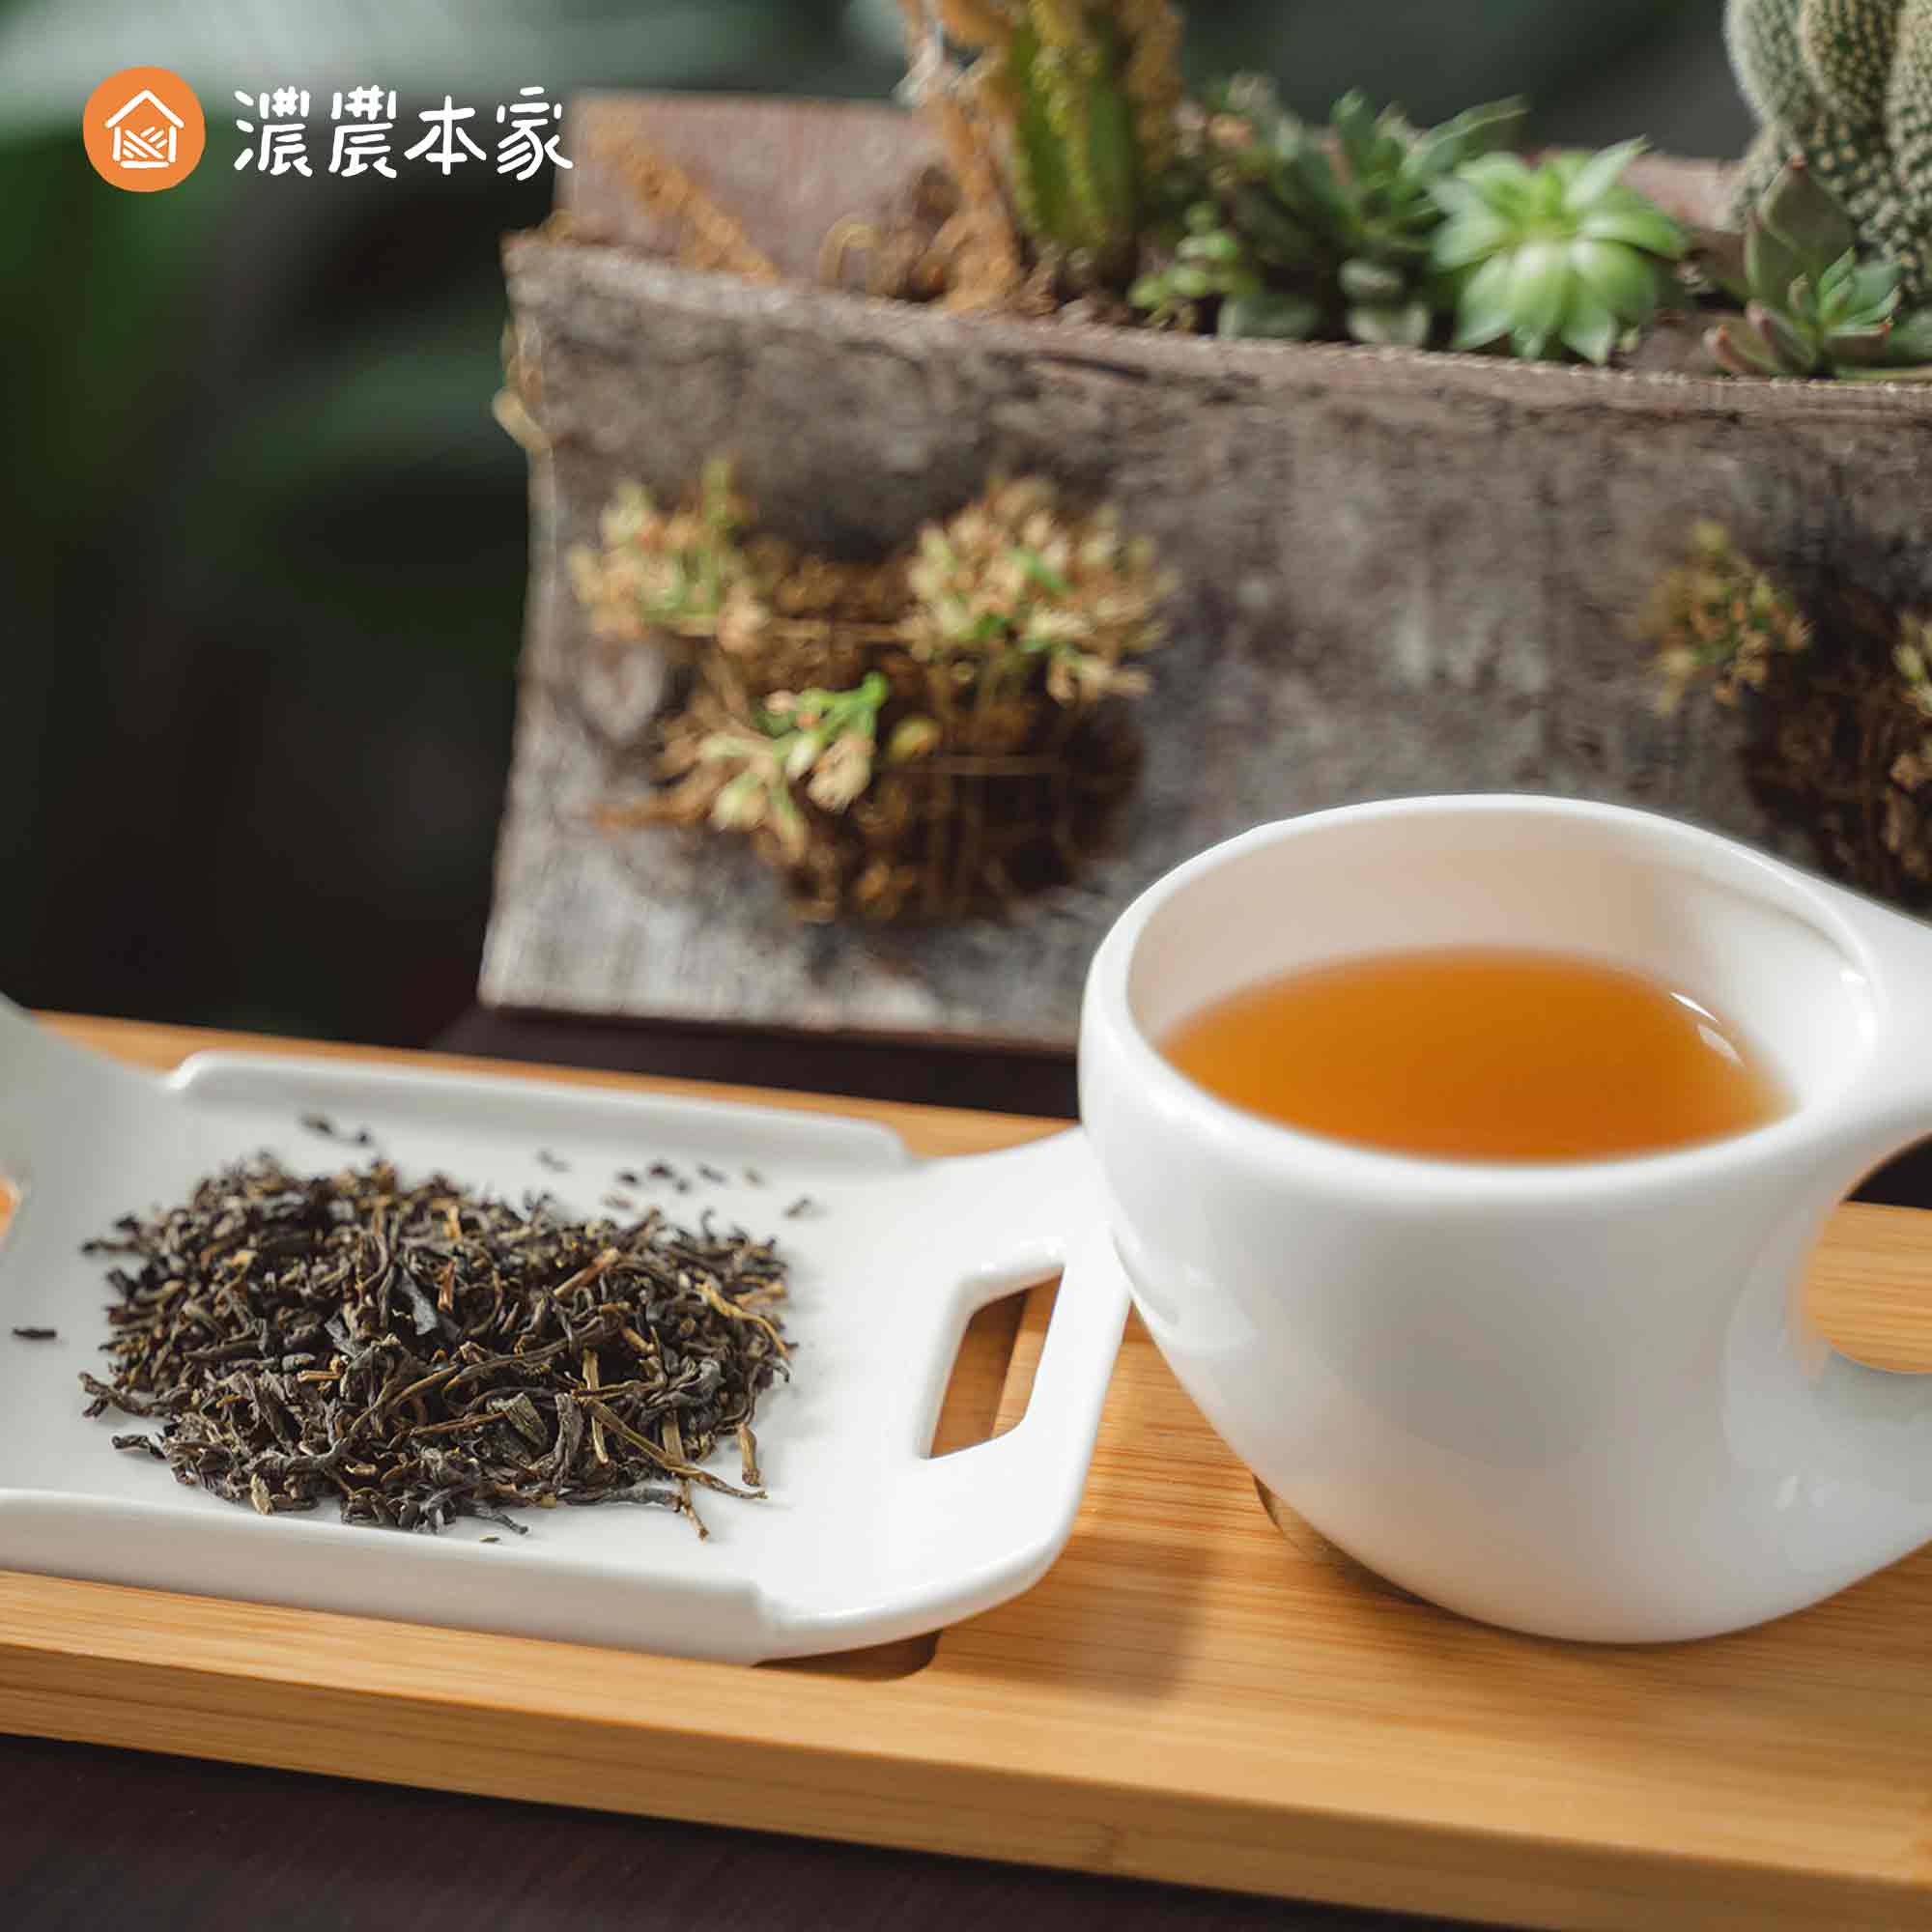 回國禮物推薦代表台灣特色的小禮物-茉莉綠茶包！送禮給外國人一定超喜歡！